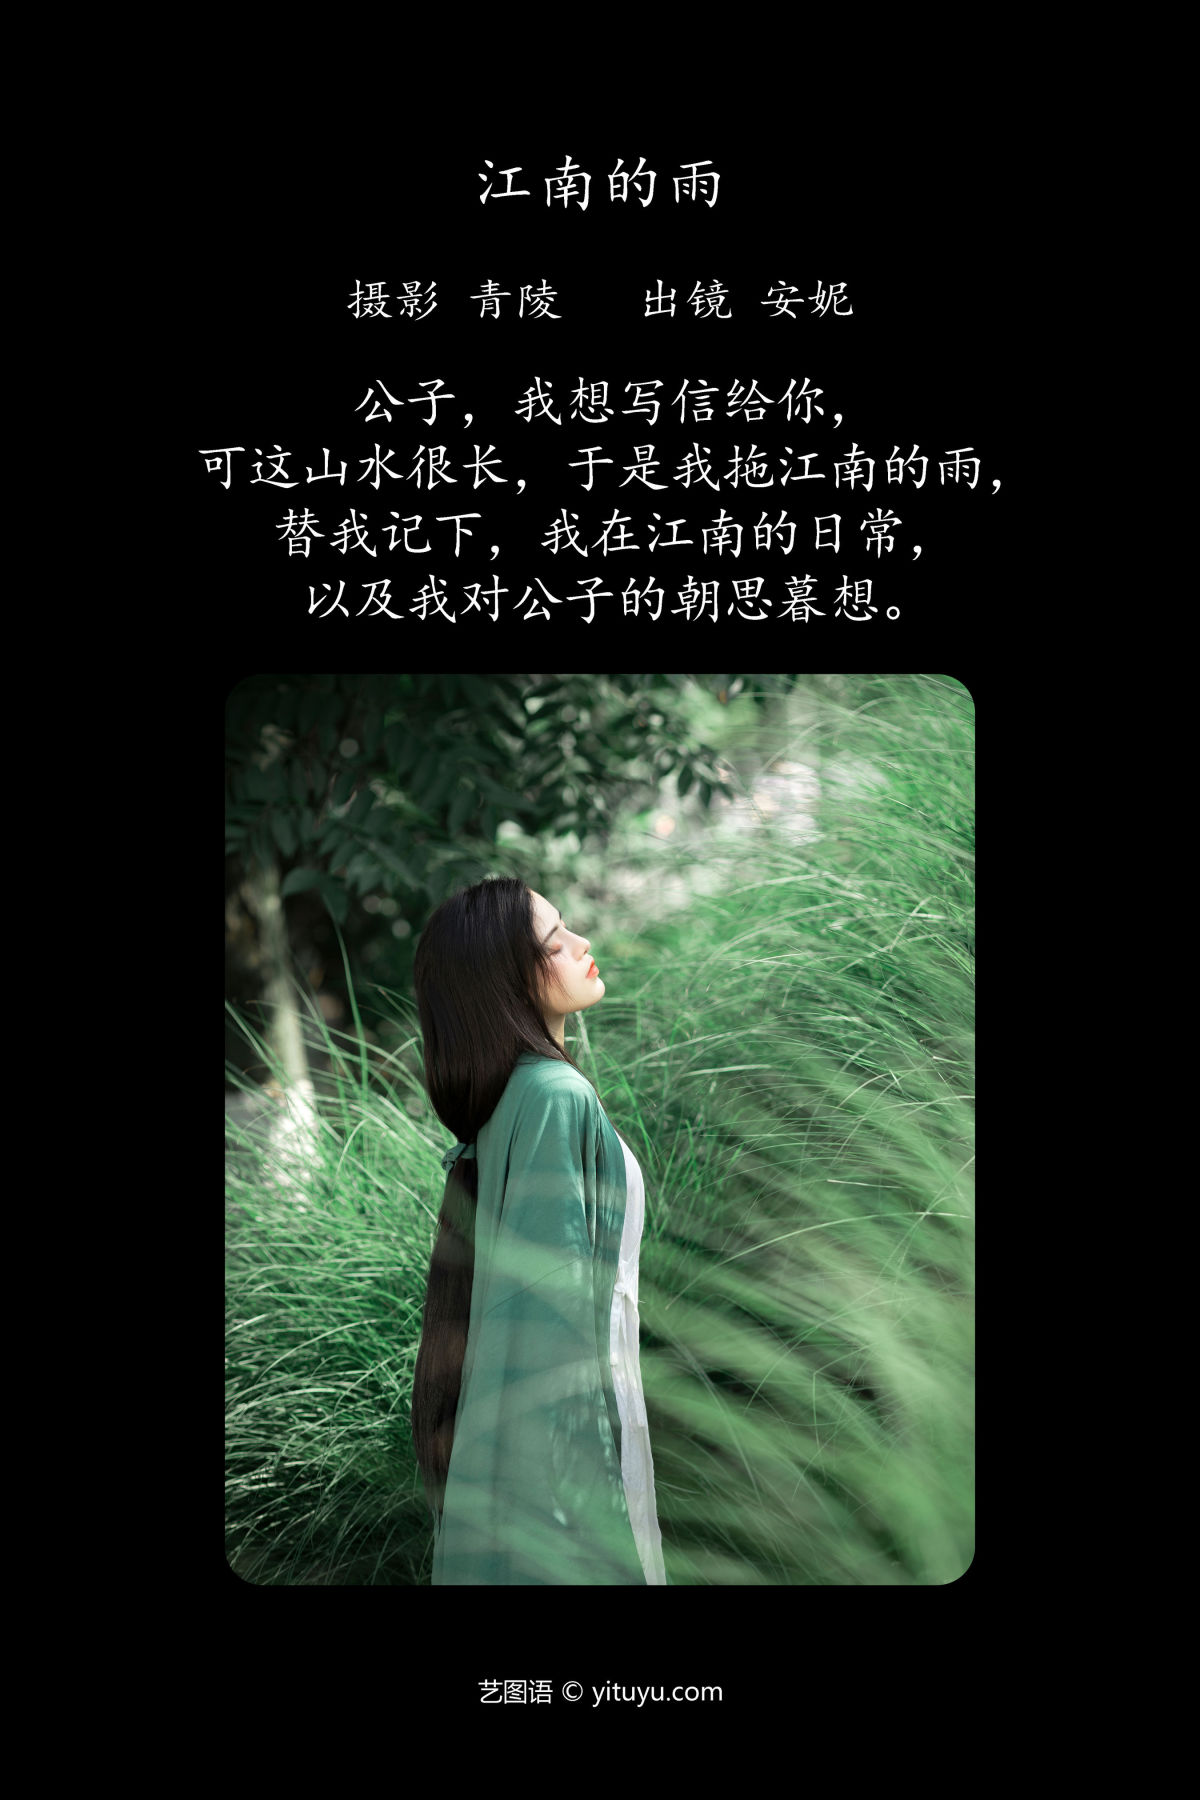 青陵_安妮《江南的雨》美图作品图片2